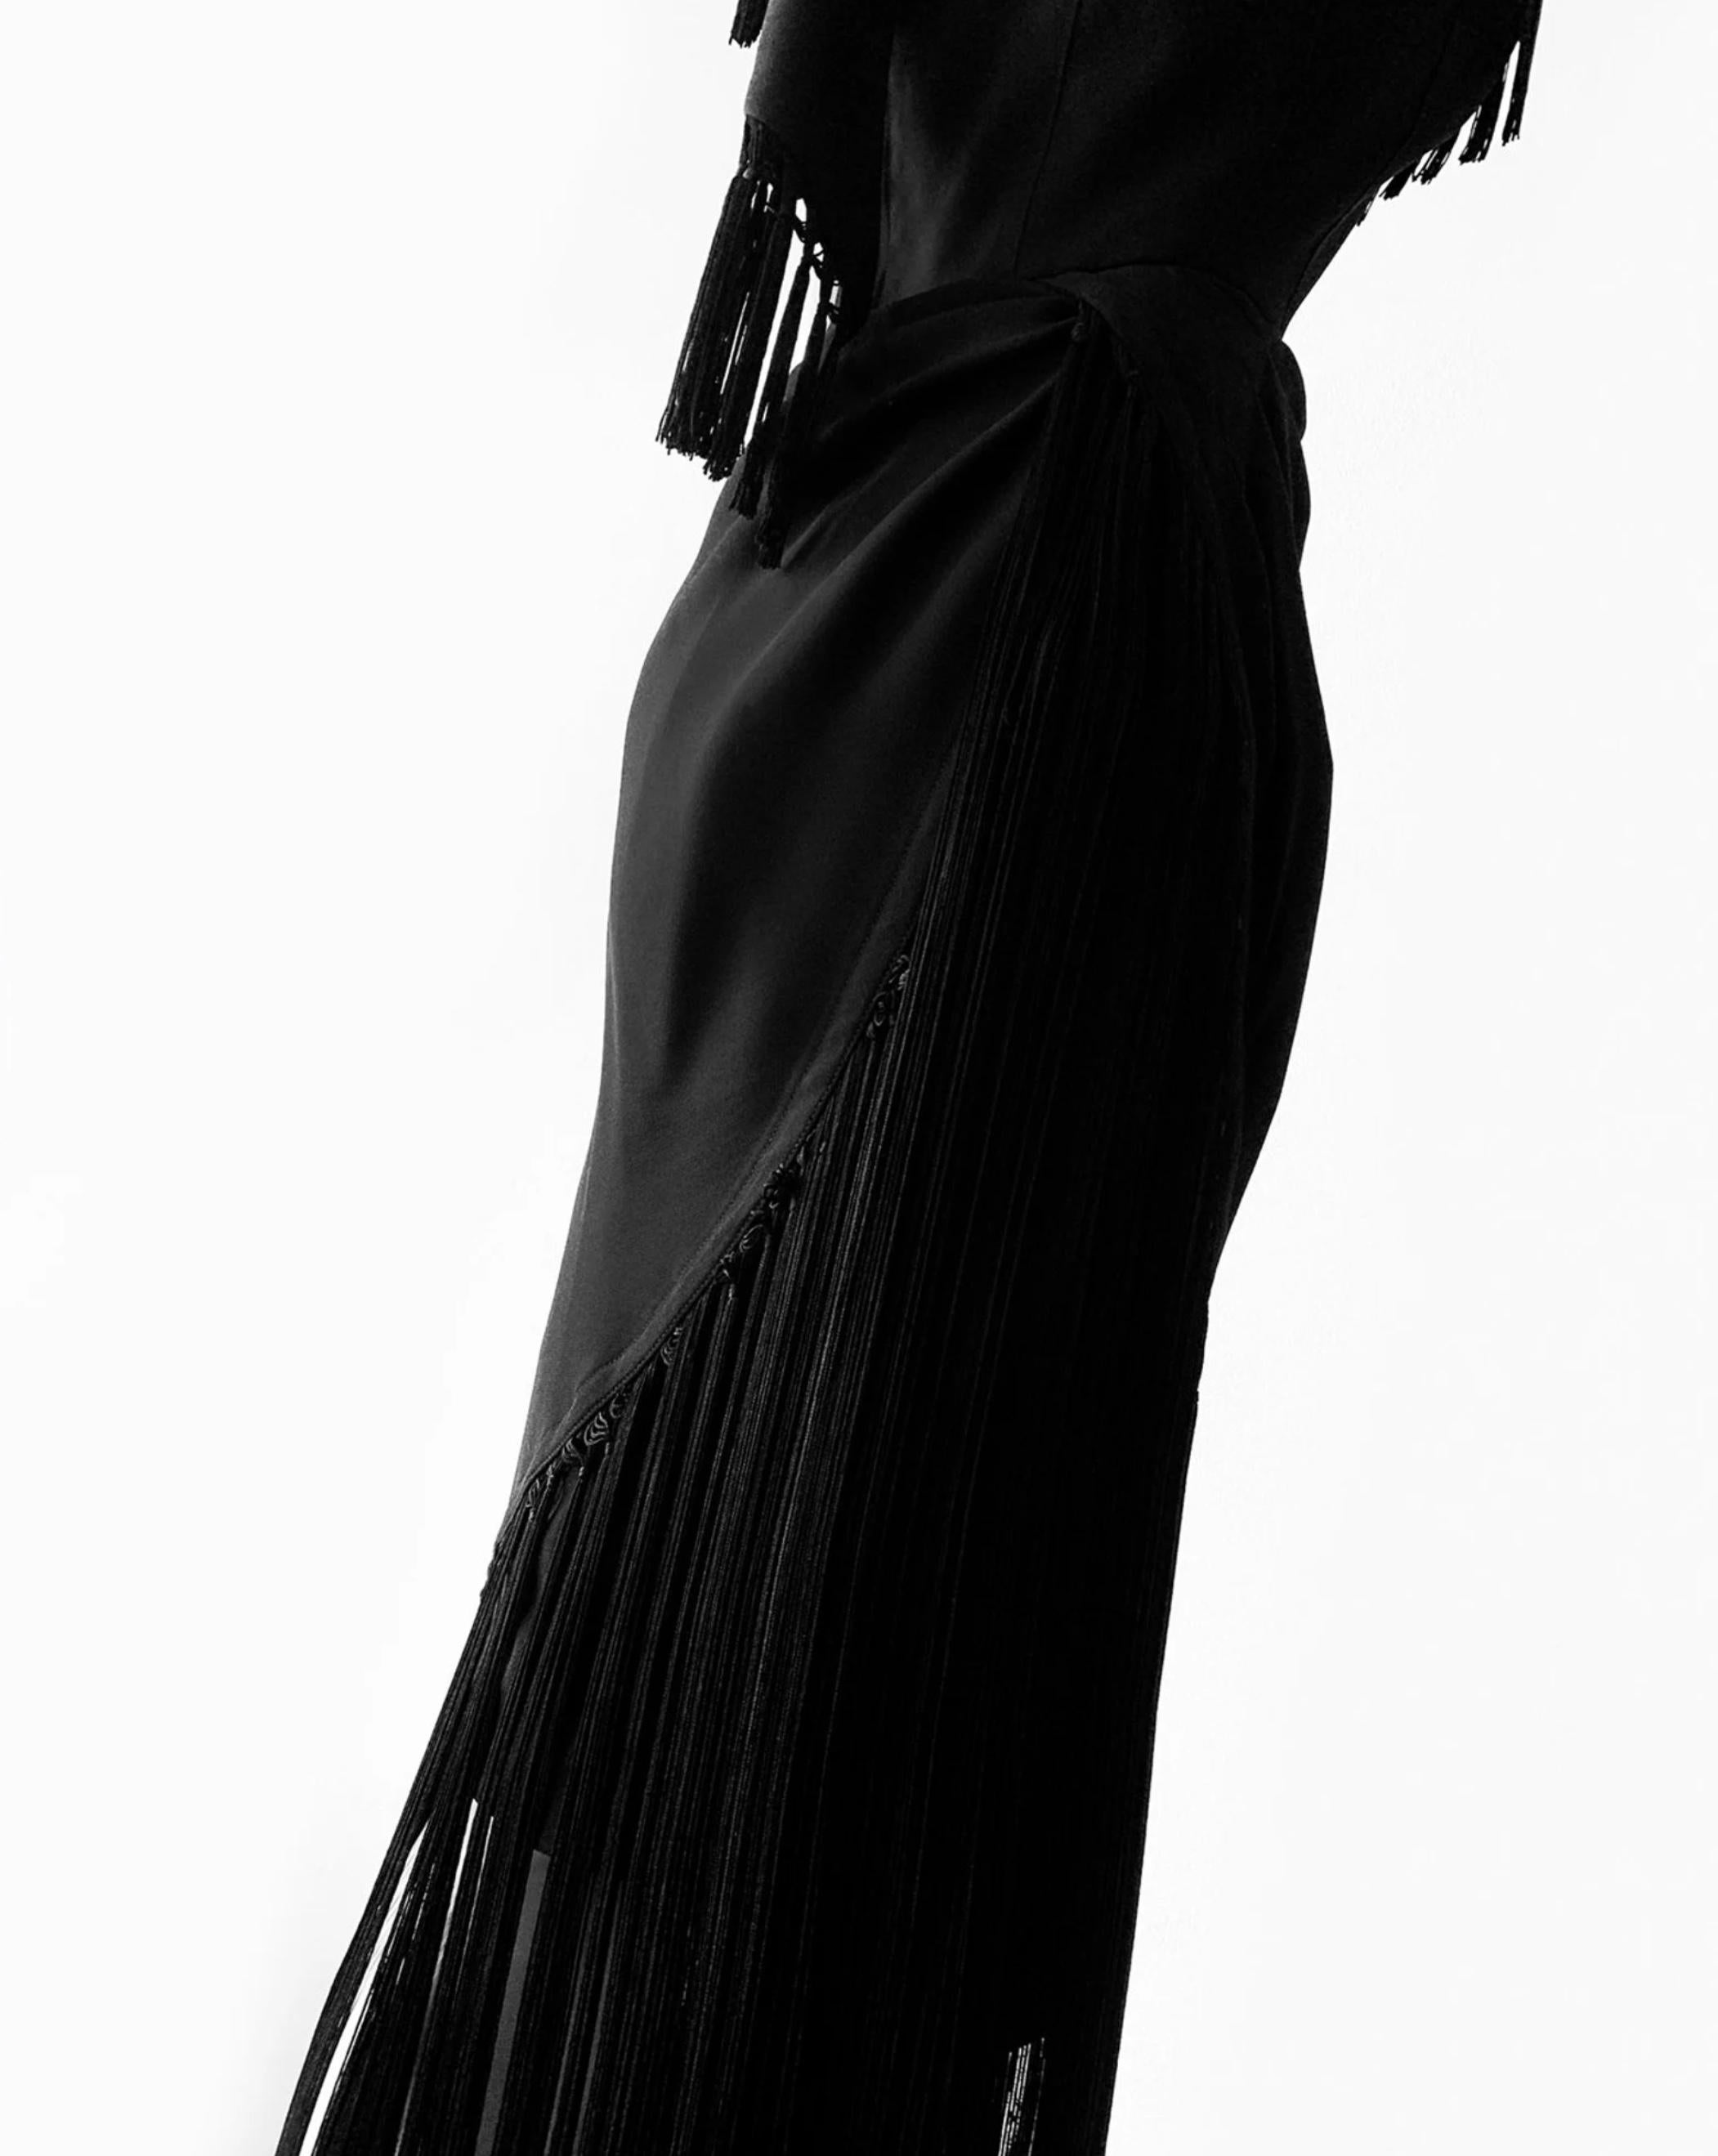 Thierry Mugler SS1997 Gorgeous Black Evening Dress Fringe Elegant Vintage 90s  For Sale 1